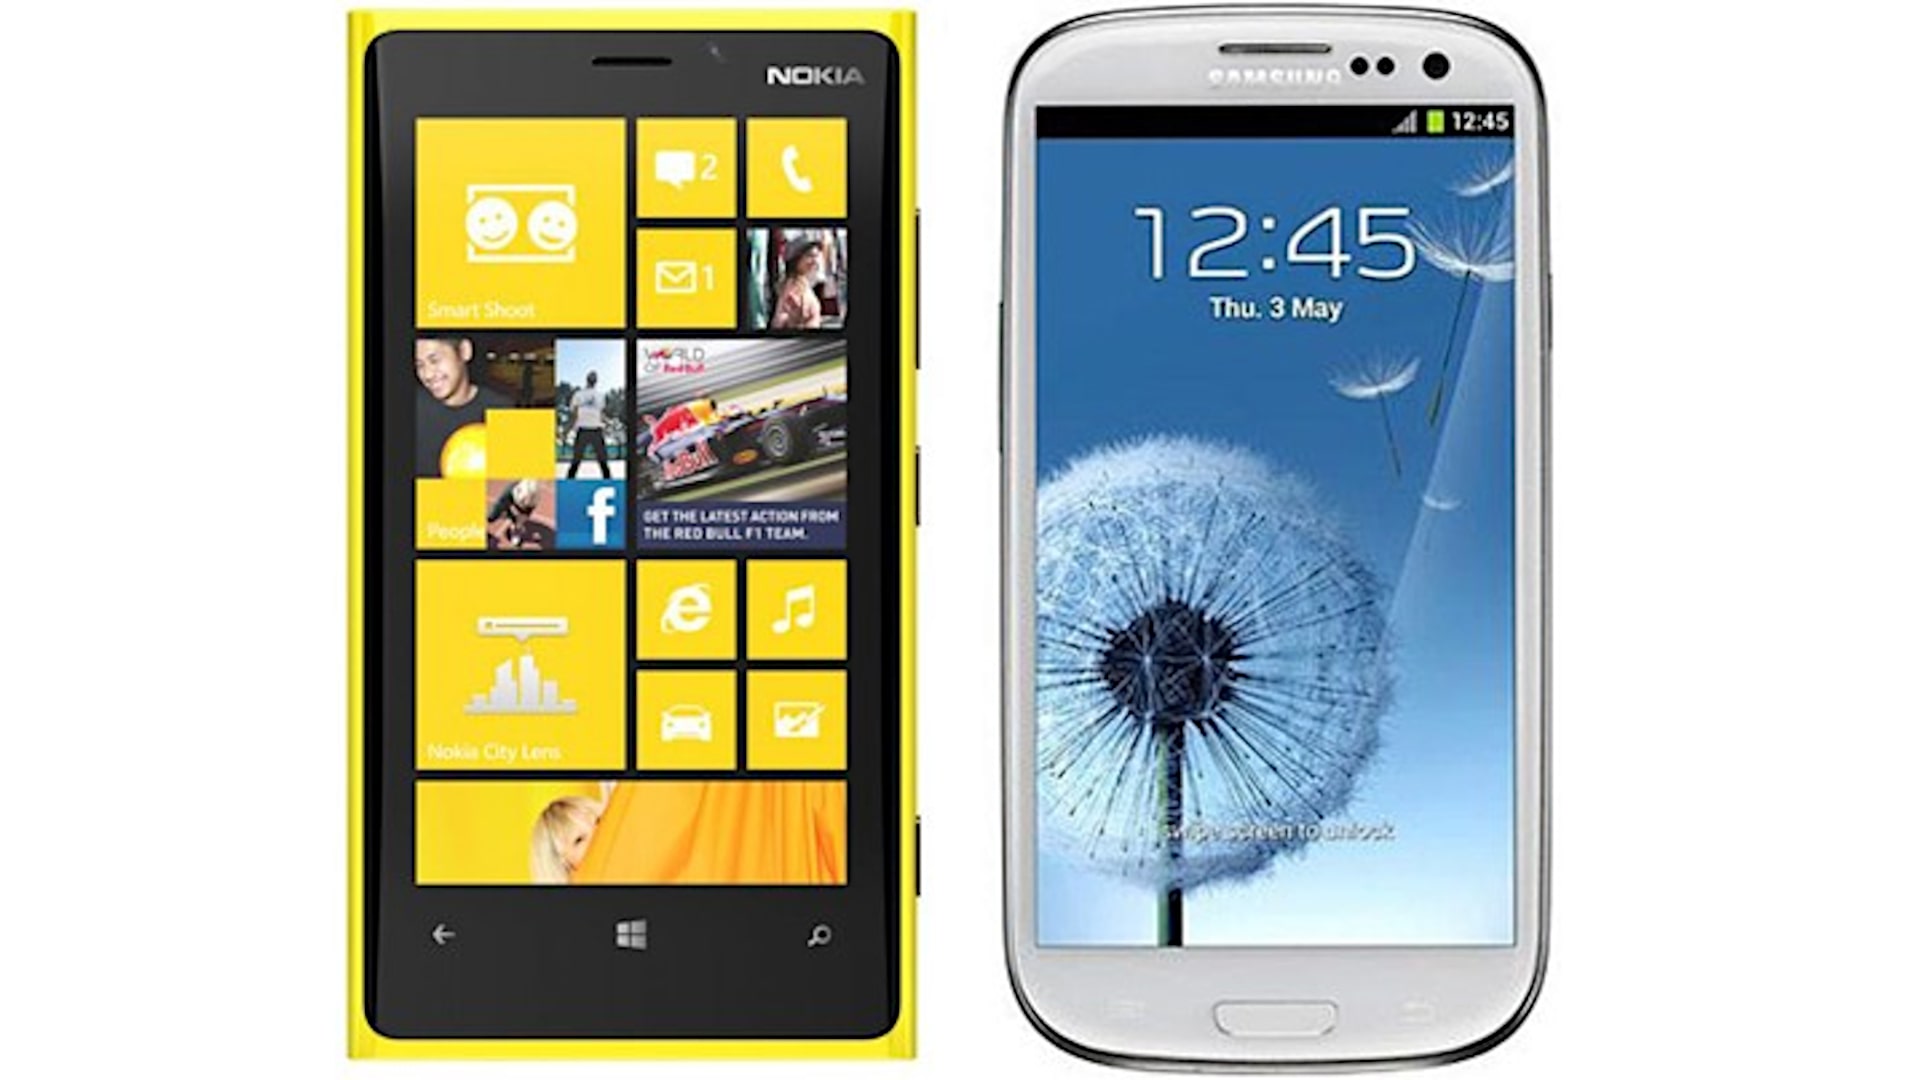 ودود ينسب مبهر  Nokia Lumia 920 VS Samsung Galaxy S3 Comparison